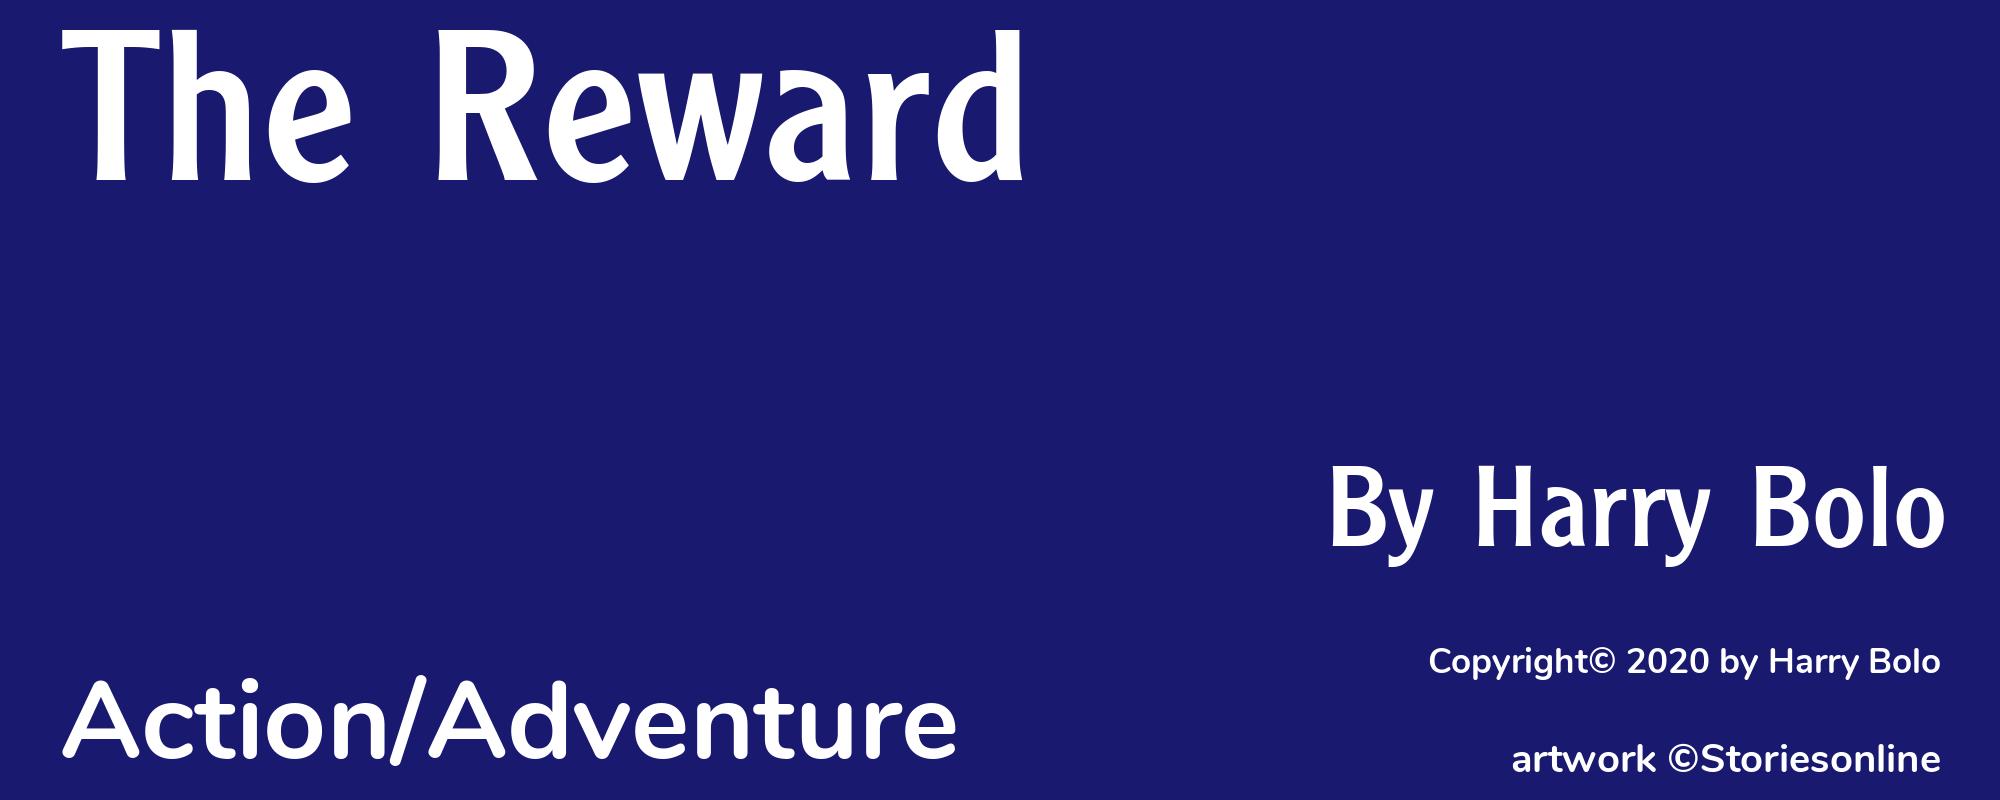 The Reward - Cover